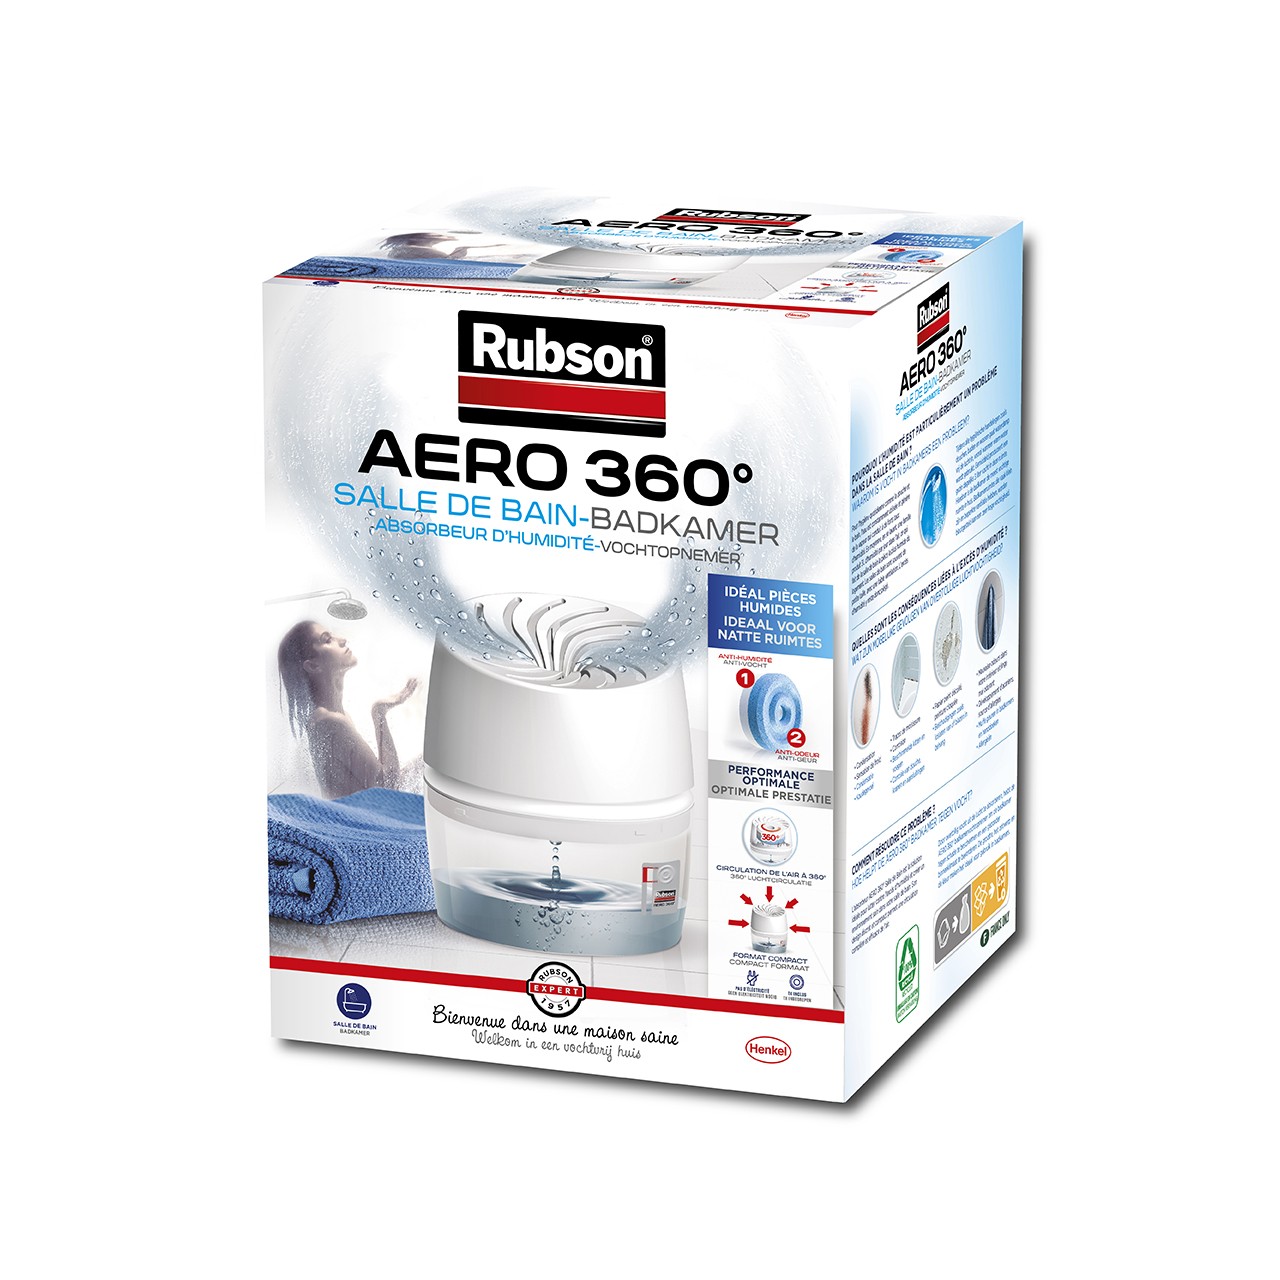 Recharge Aero 360° pour absorbeur d'humidité Rubson - Boite de 4 sur